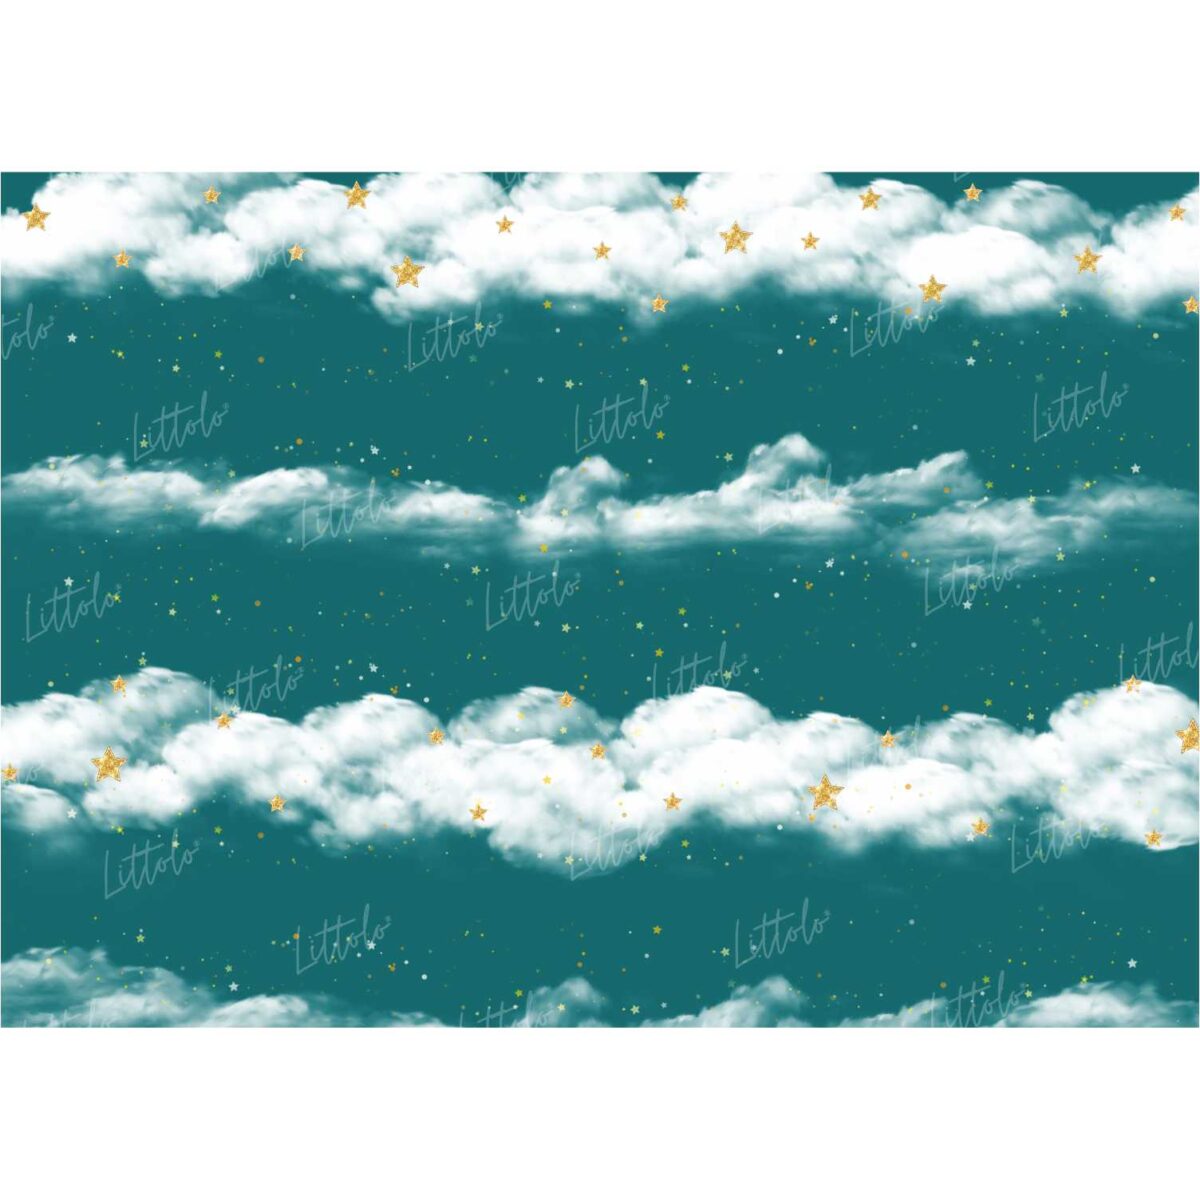 LB0197 Clouds Theme Backdrop